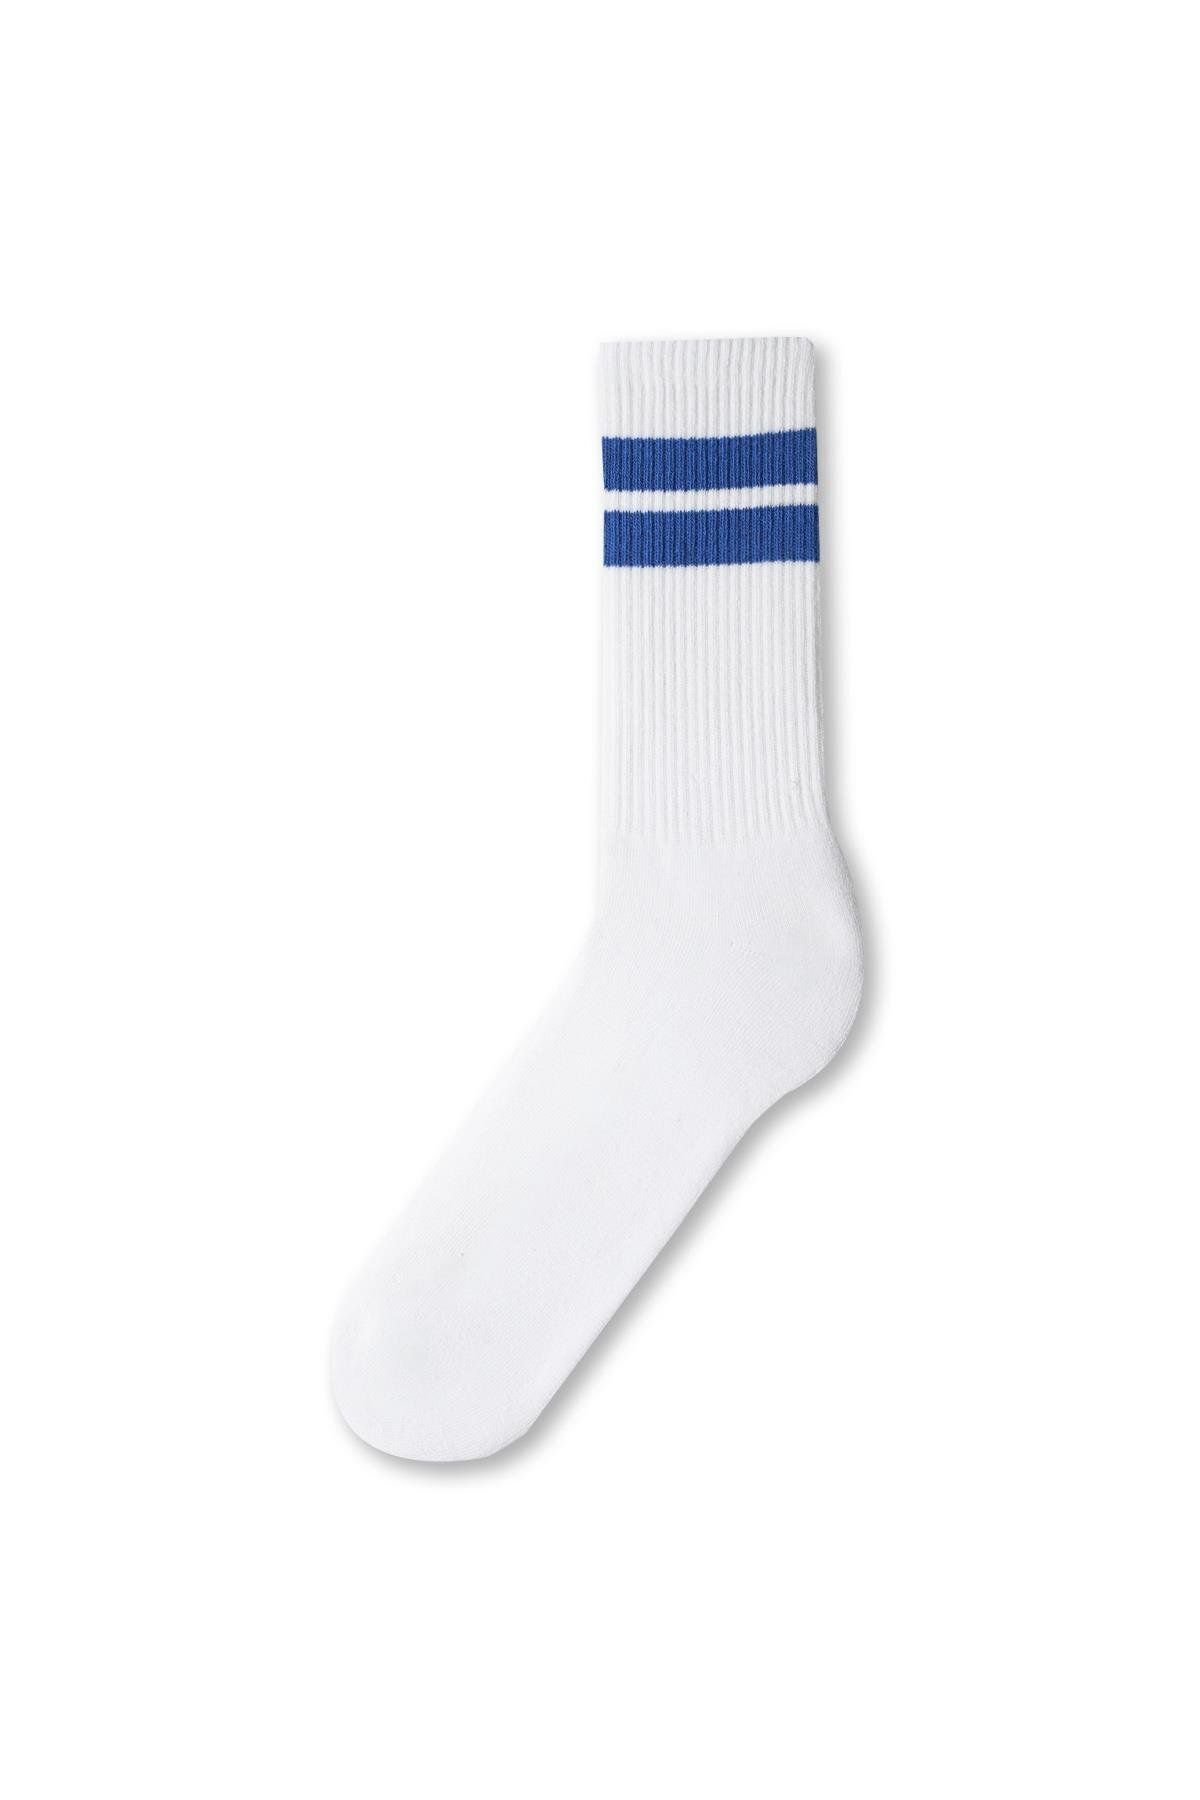 Katia & Bony Erkek Havlu Taban Uzun Konçlu Soket Çorap Beyaz Mavi